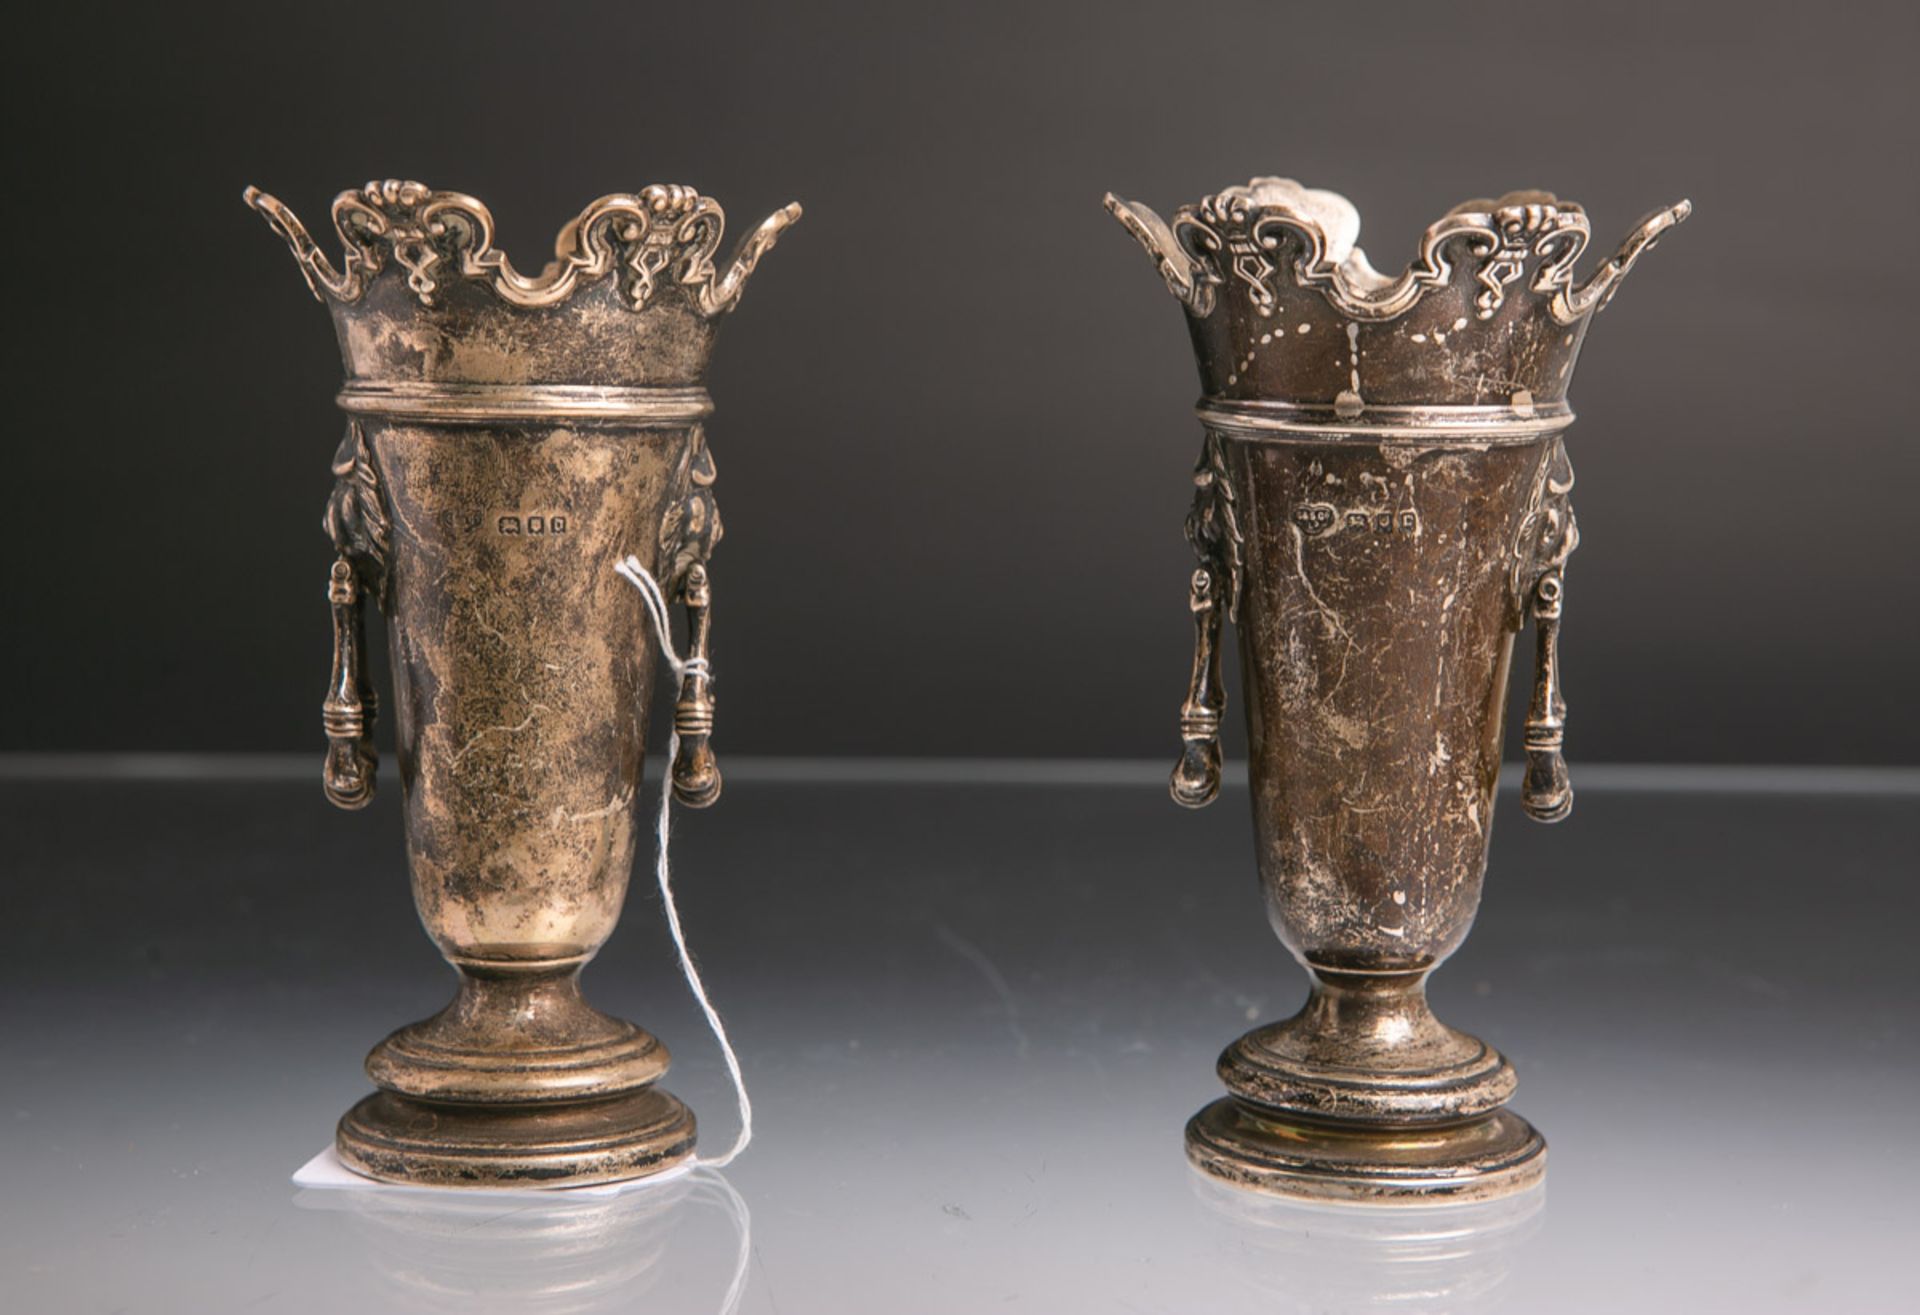 2 kl. Vasen aus Silber (London,